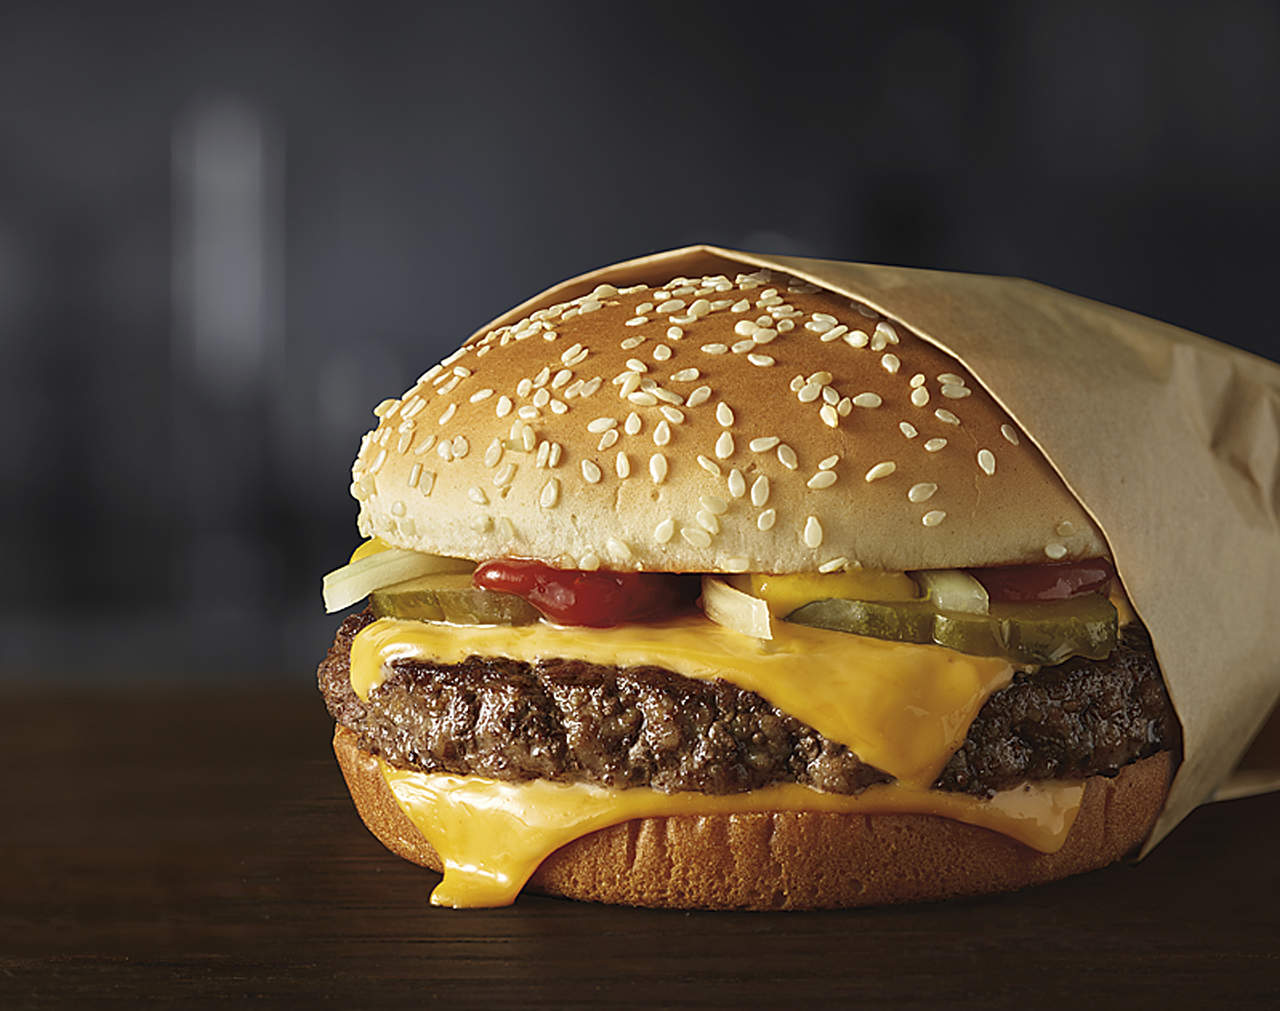 McDonald's trata de mejorar su imagen a medida que más gente rehúye los alimentos procesados. (AP)

